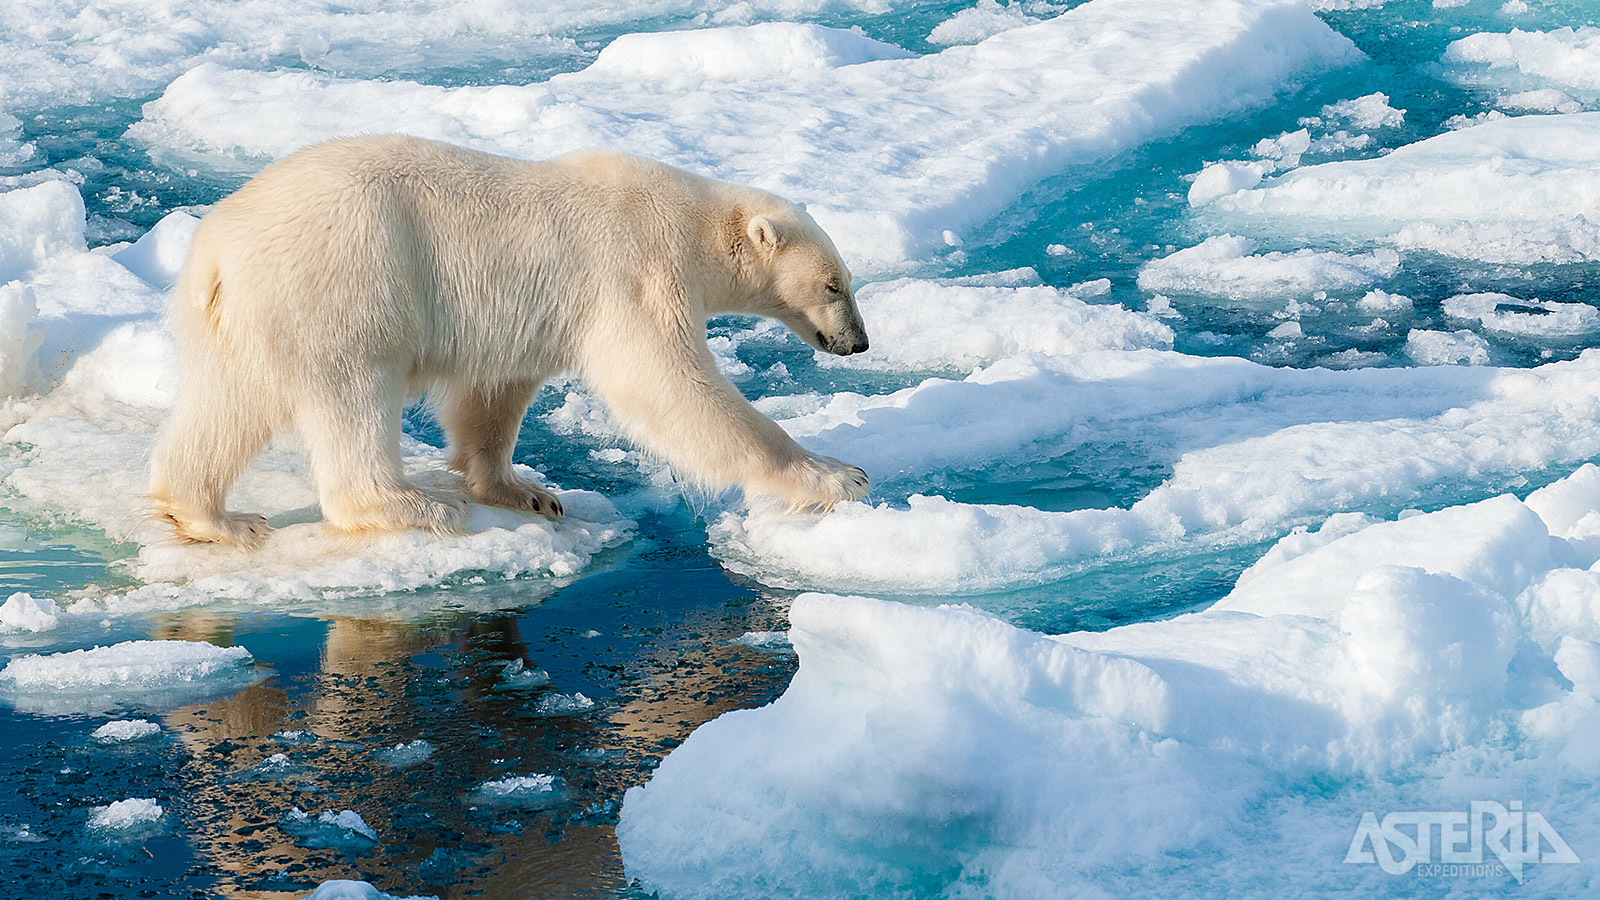 OP het pakijs tussen Spitsbergen en Groenland is de kans het grootst om een ijsbeer te spotten